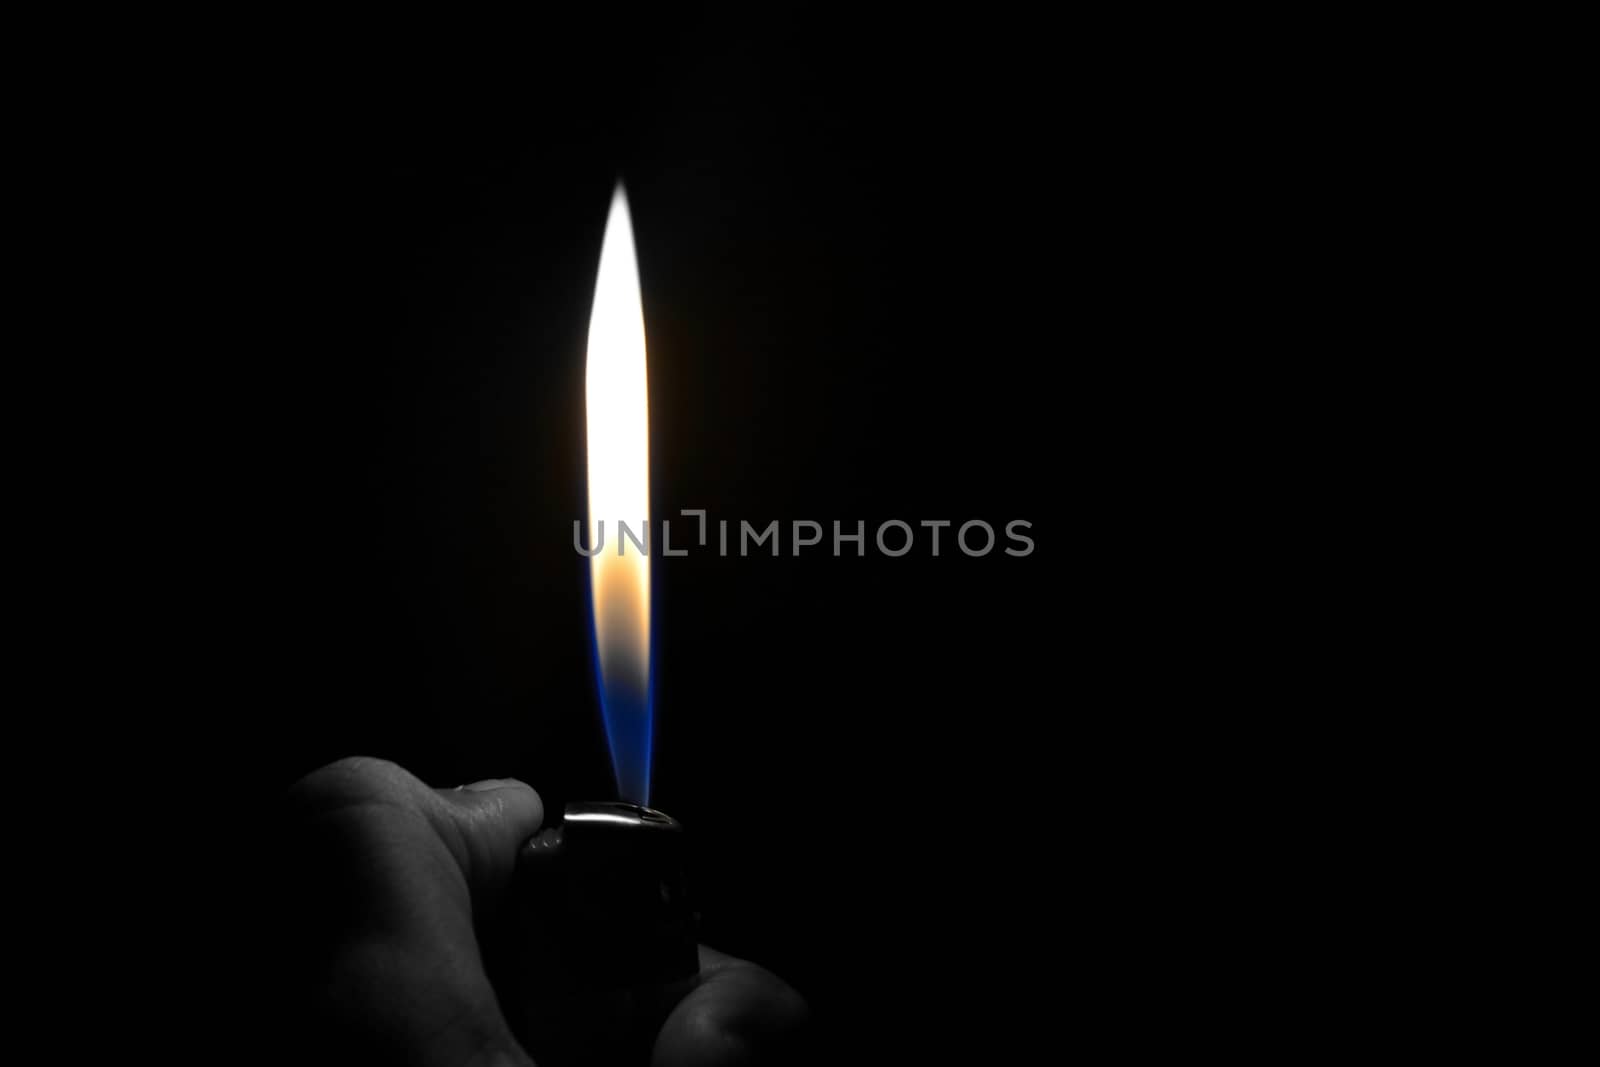 Cigarette lighter flame on a black background by rkbalaji